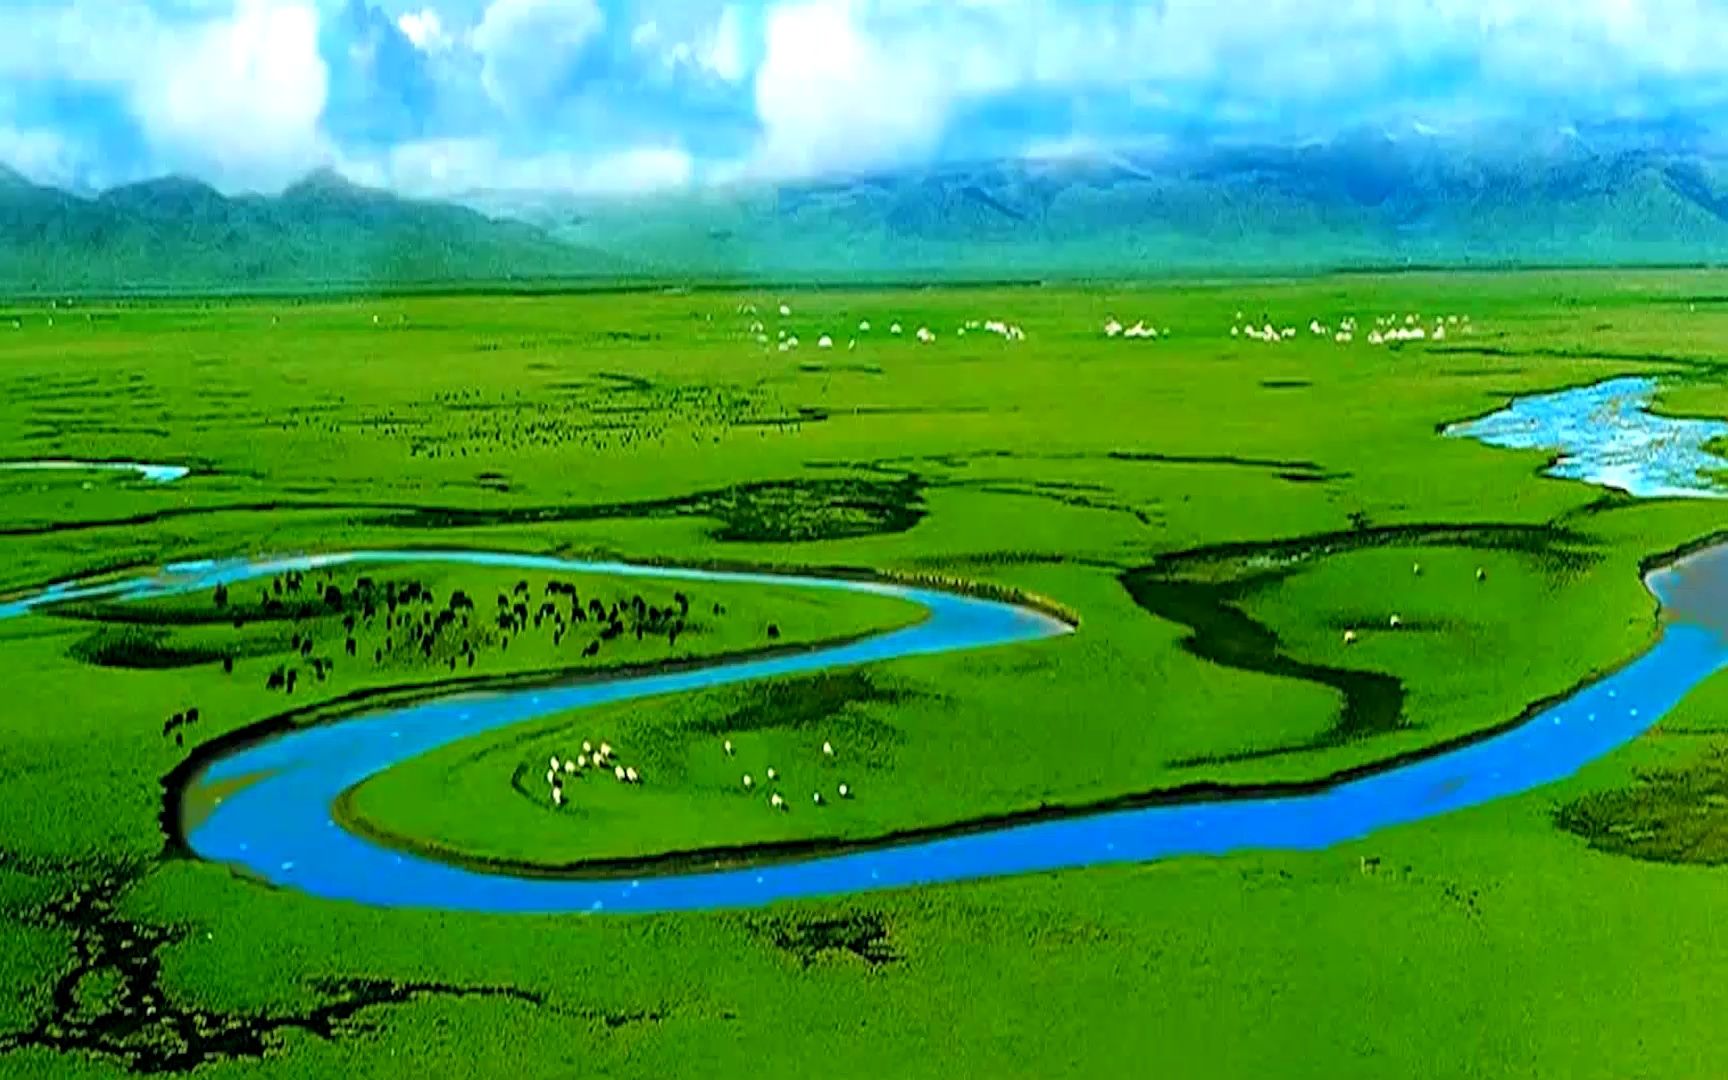 民族舞《额尔古纳河》音乐视频背景画面 蒙古族舞蹈群舞背景视频